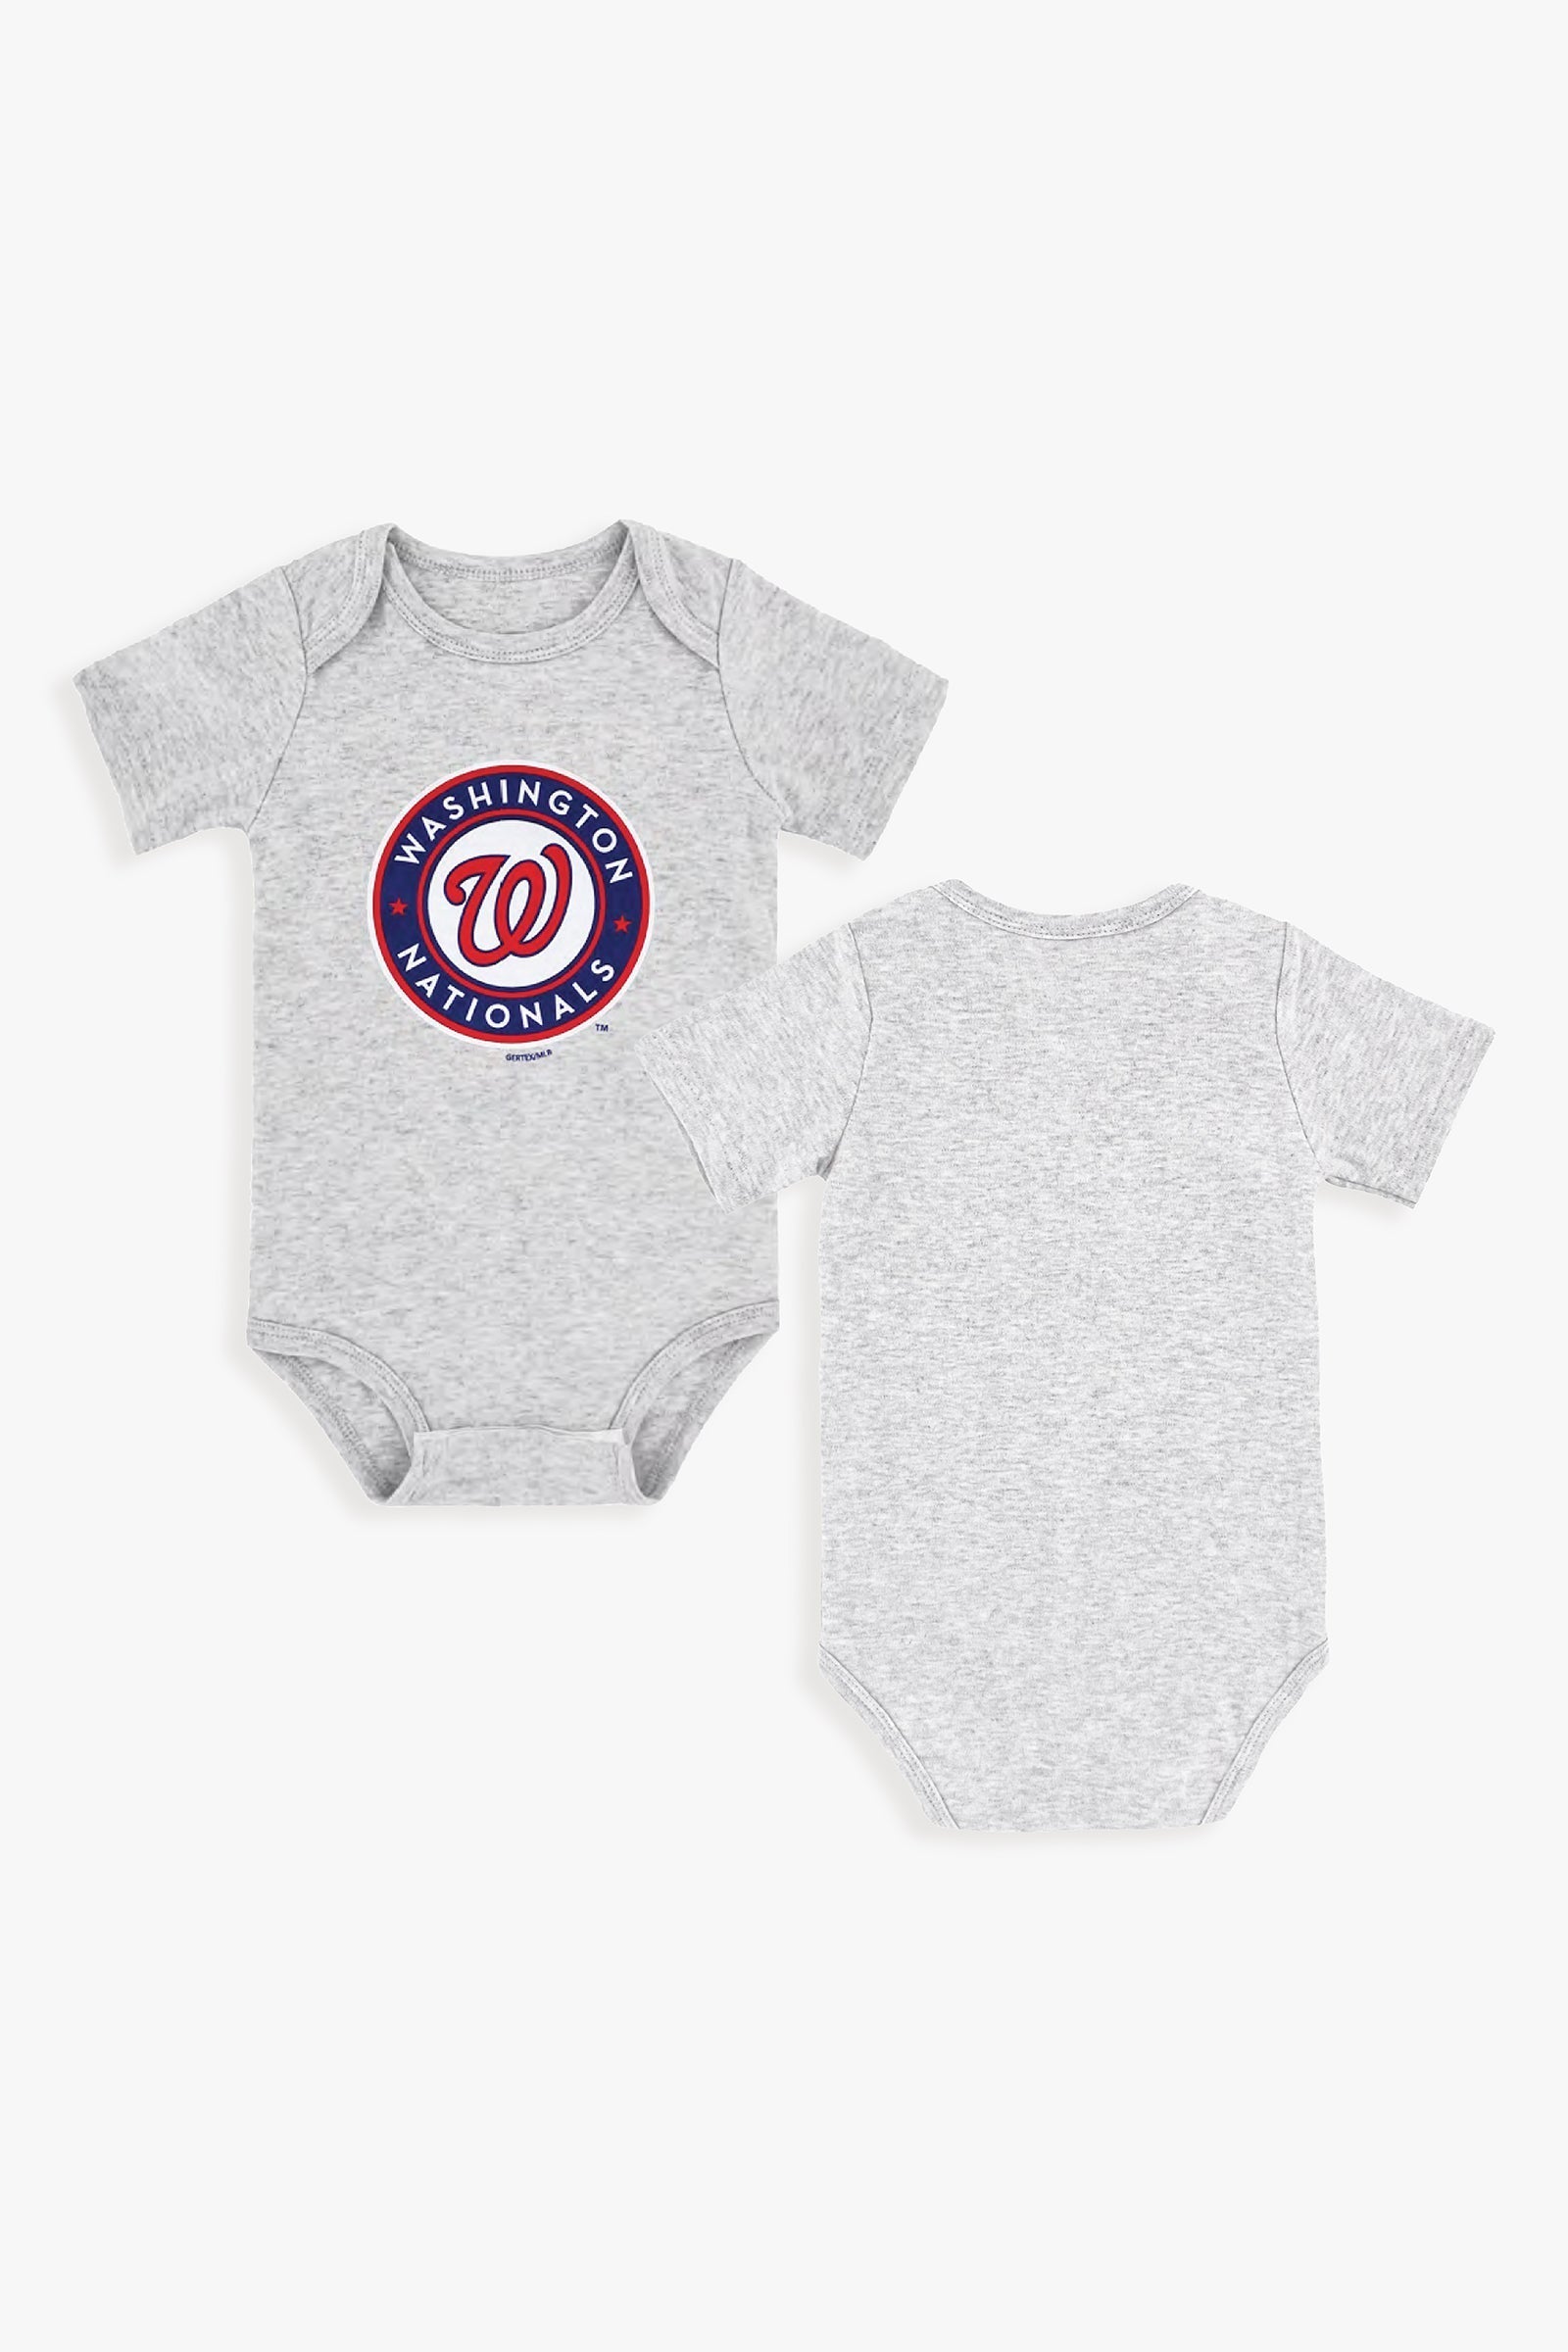 Customizable MLB Baby Onesie Bodysuit in Grey (18-24 Months)